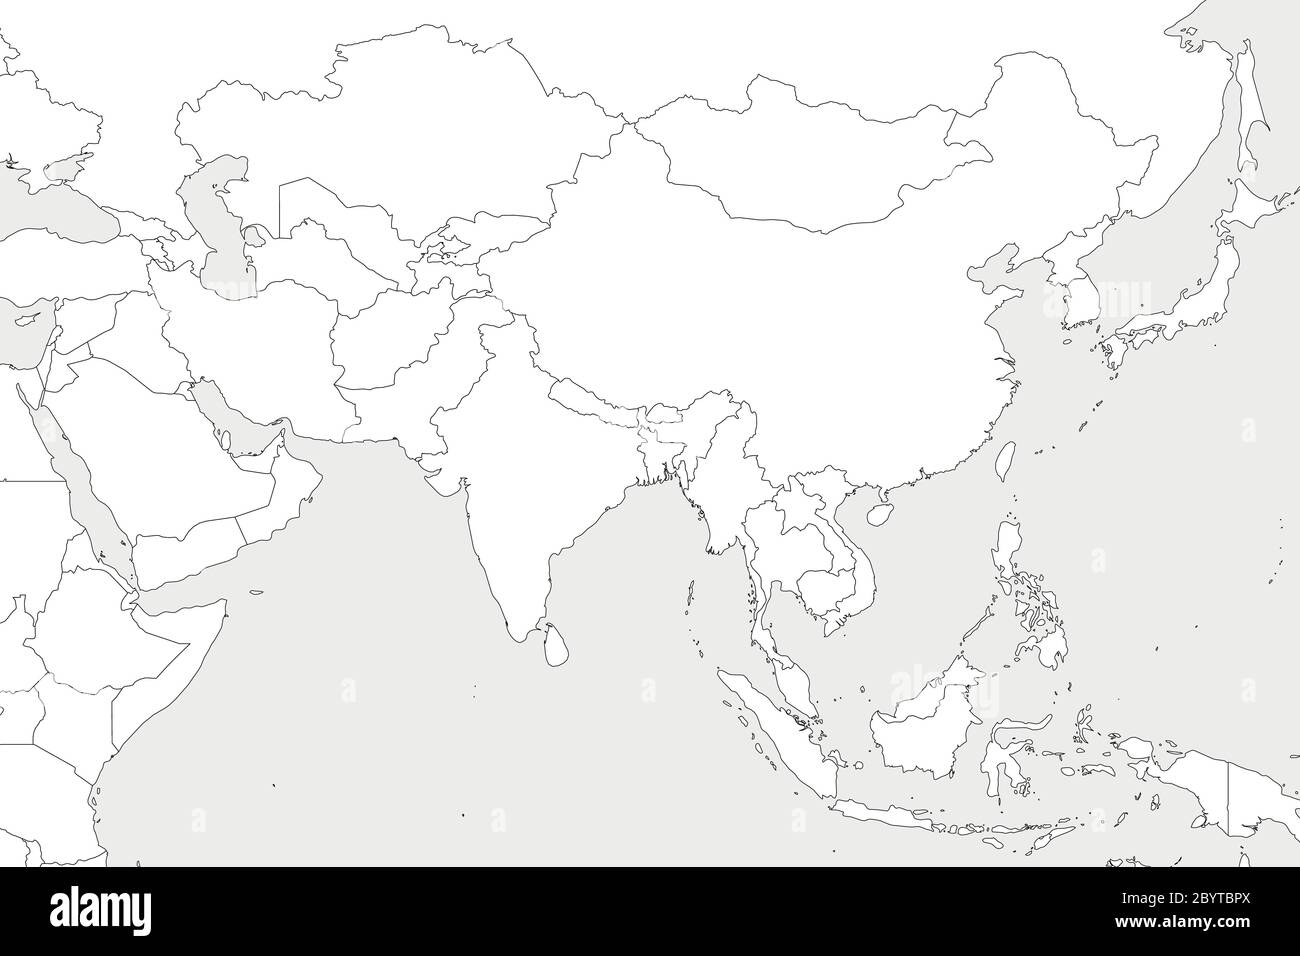 Carte politique vierge de l'Asie occidentale, méridionale et orientale.  Fines bordures noires sur fond gris clair. Illustration vectorielle Image  Vectorielle Stock - Alamy